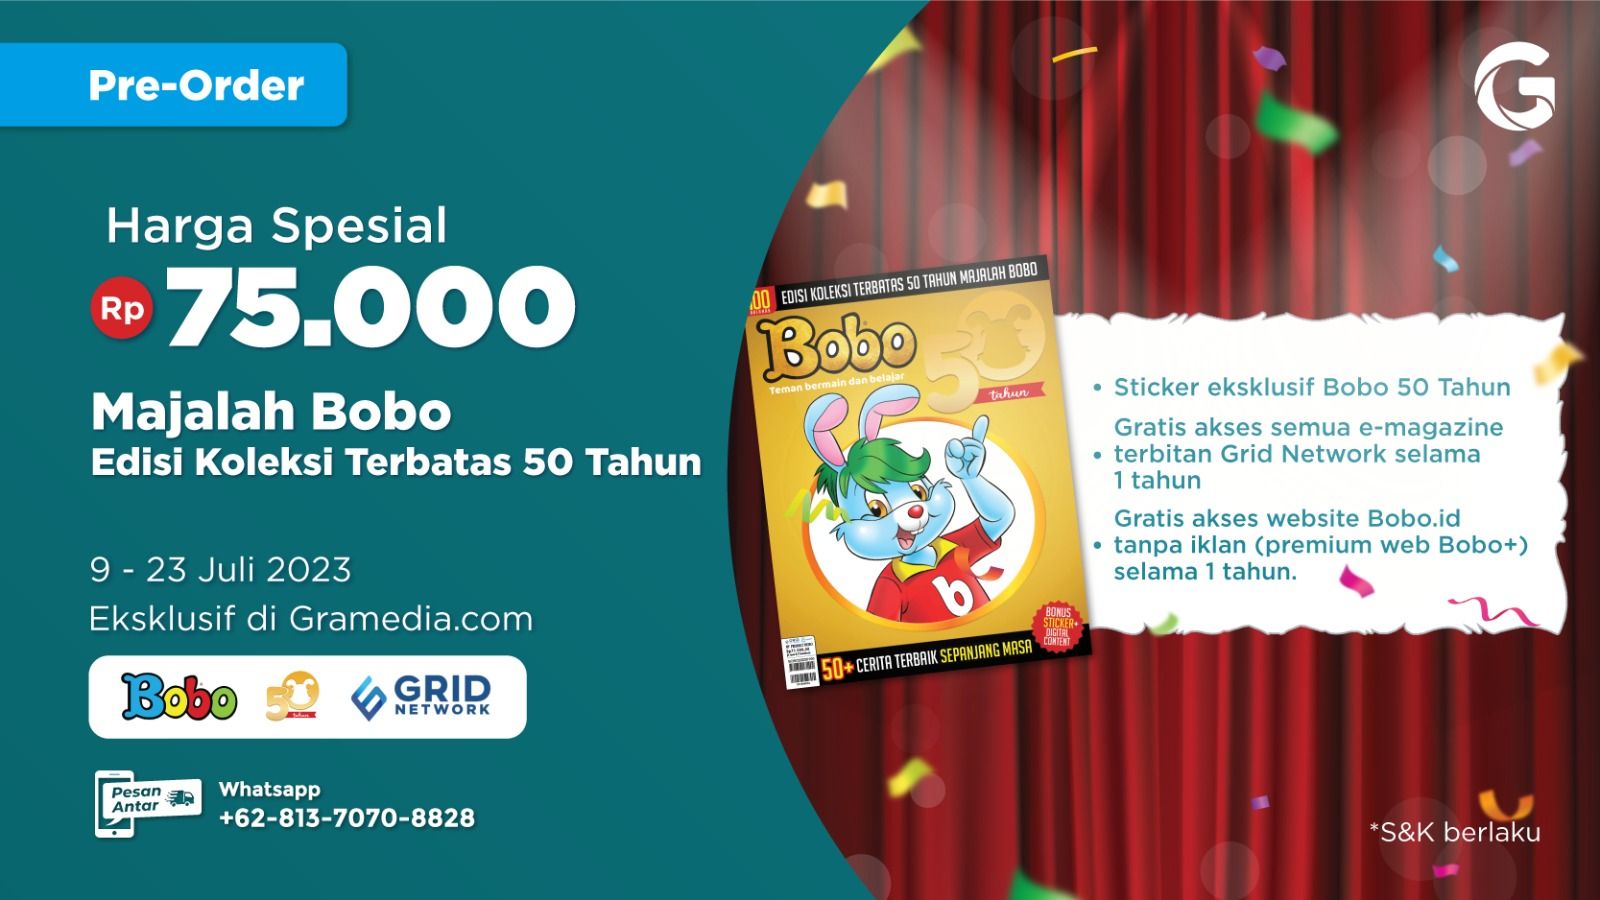 Majalah Bobo Edisi Koleksi Terbatas 50 Tahun Sudah Bisa Kamu Pesan!